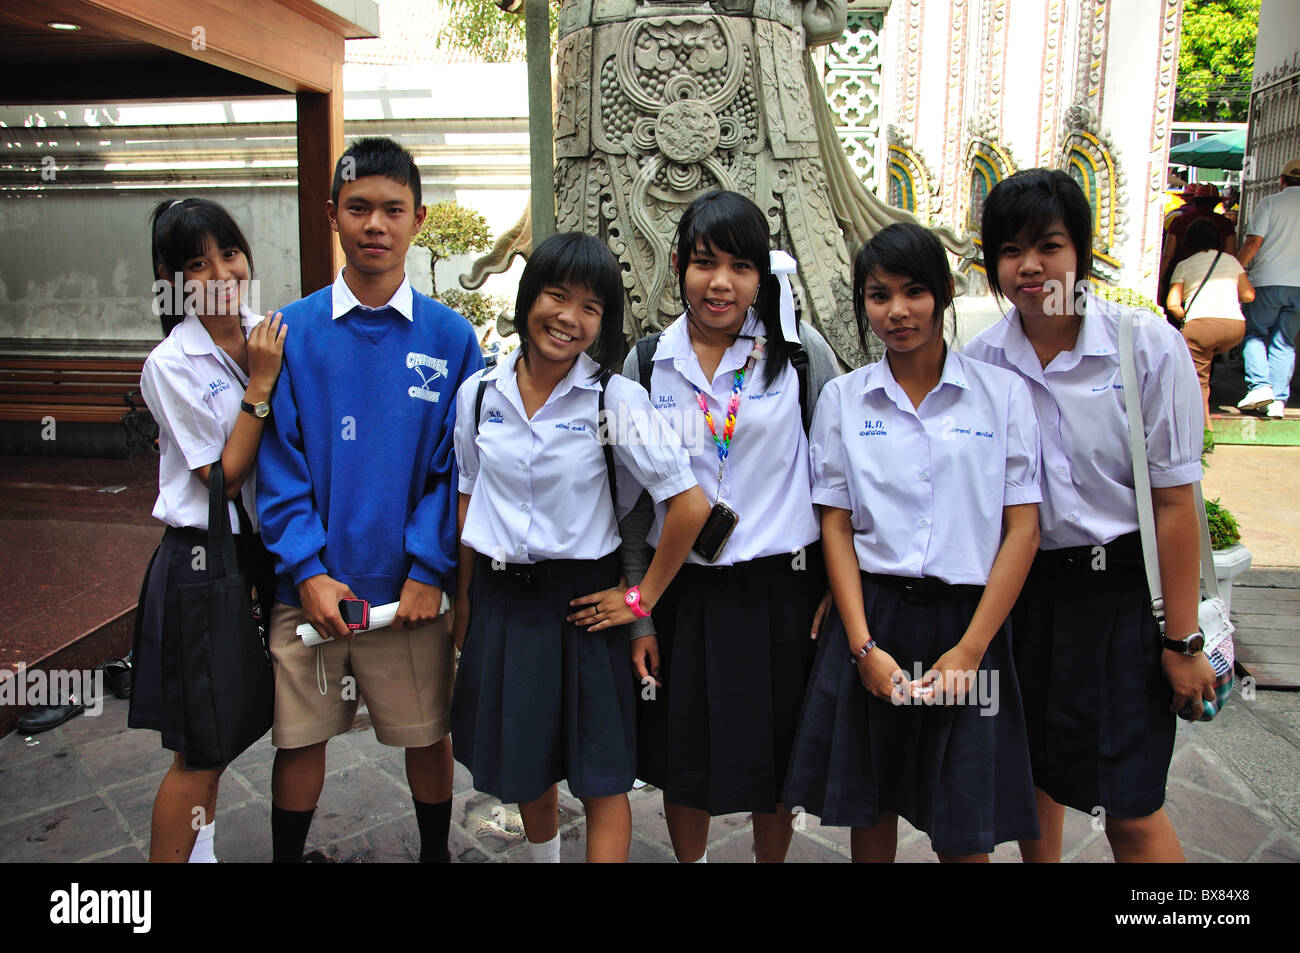 Groupe d'élèves de l'école, le Wat Pho, Temple de l'île Rattanakosin, Bangkok, Thaïlande Banque D'Images